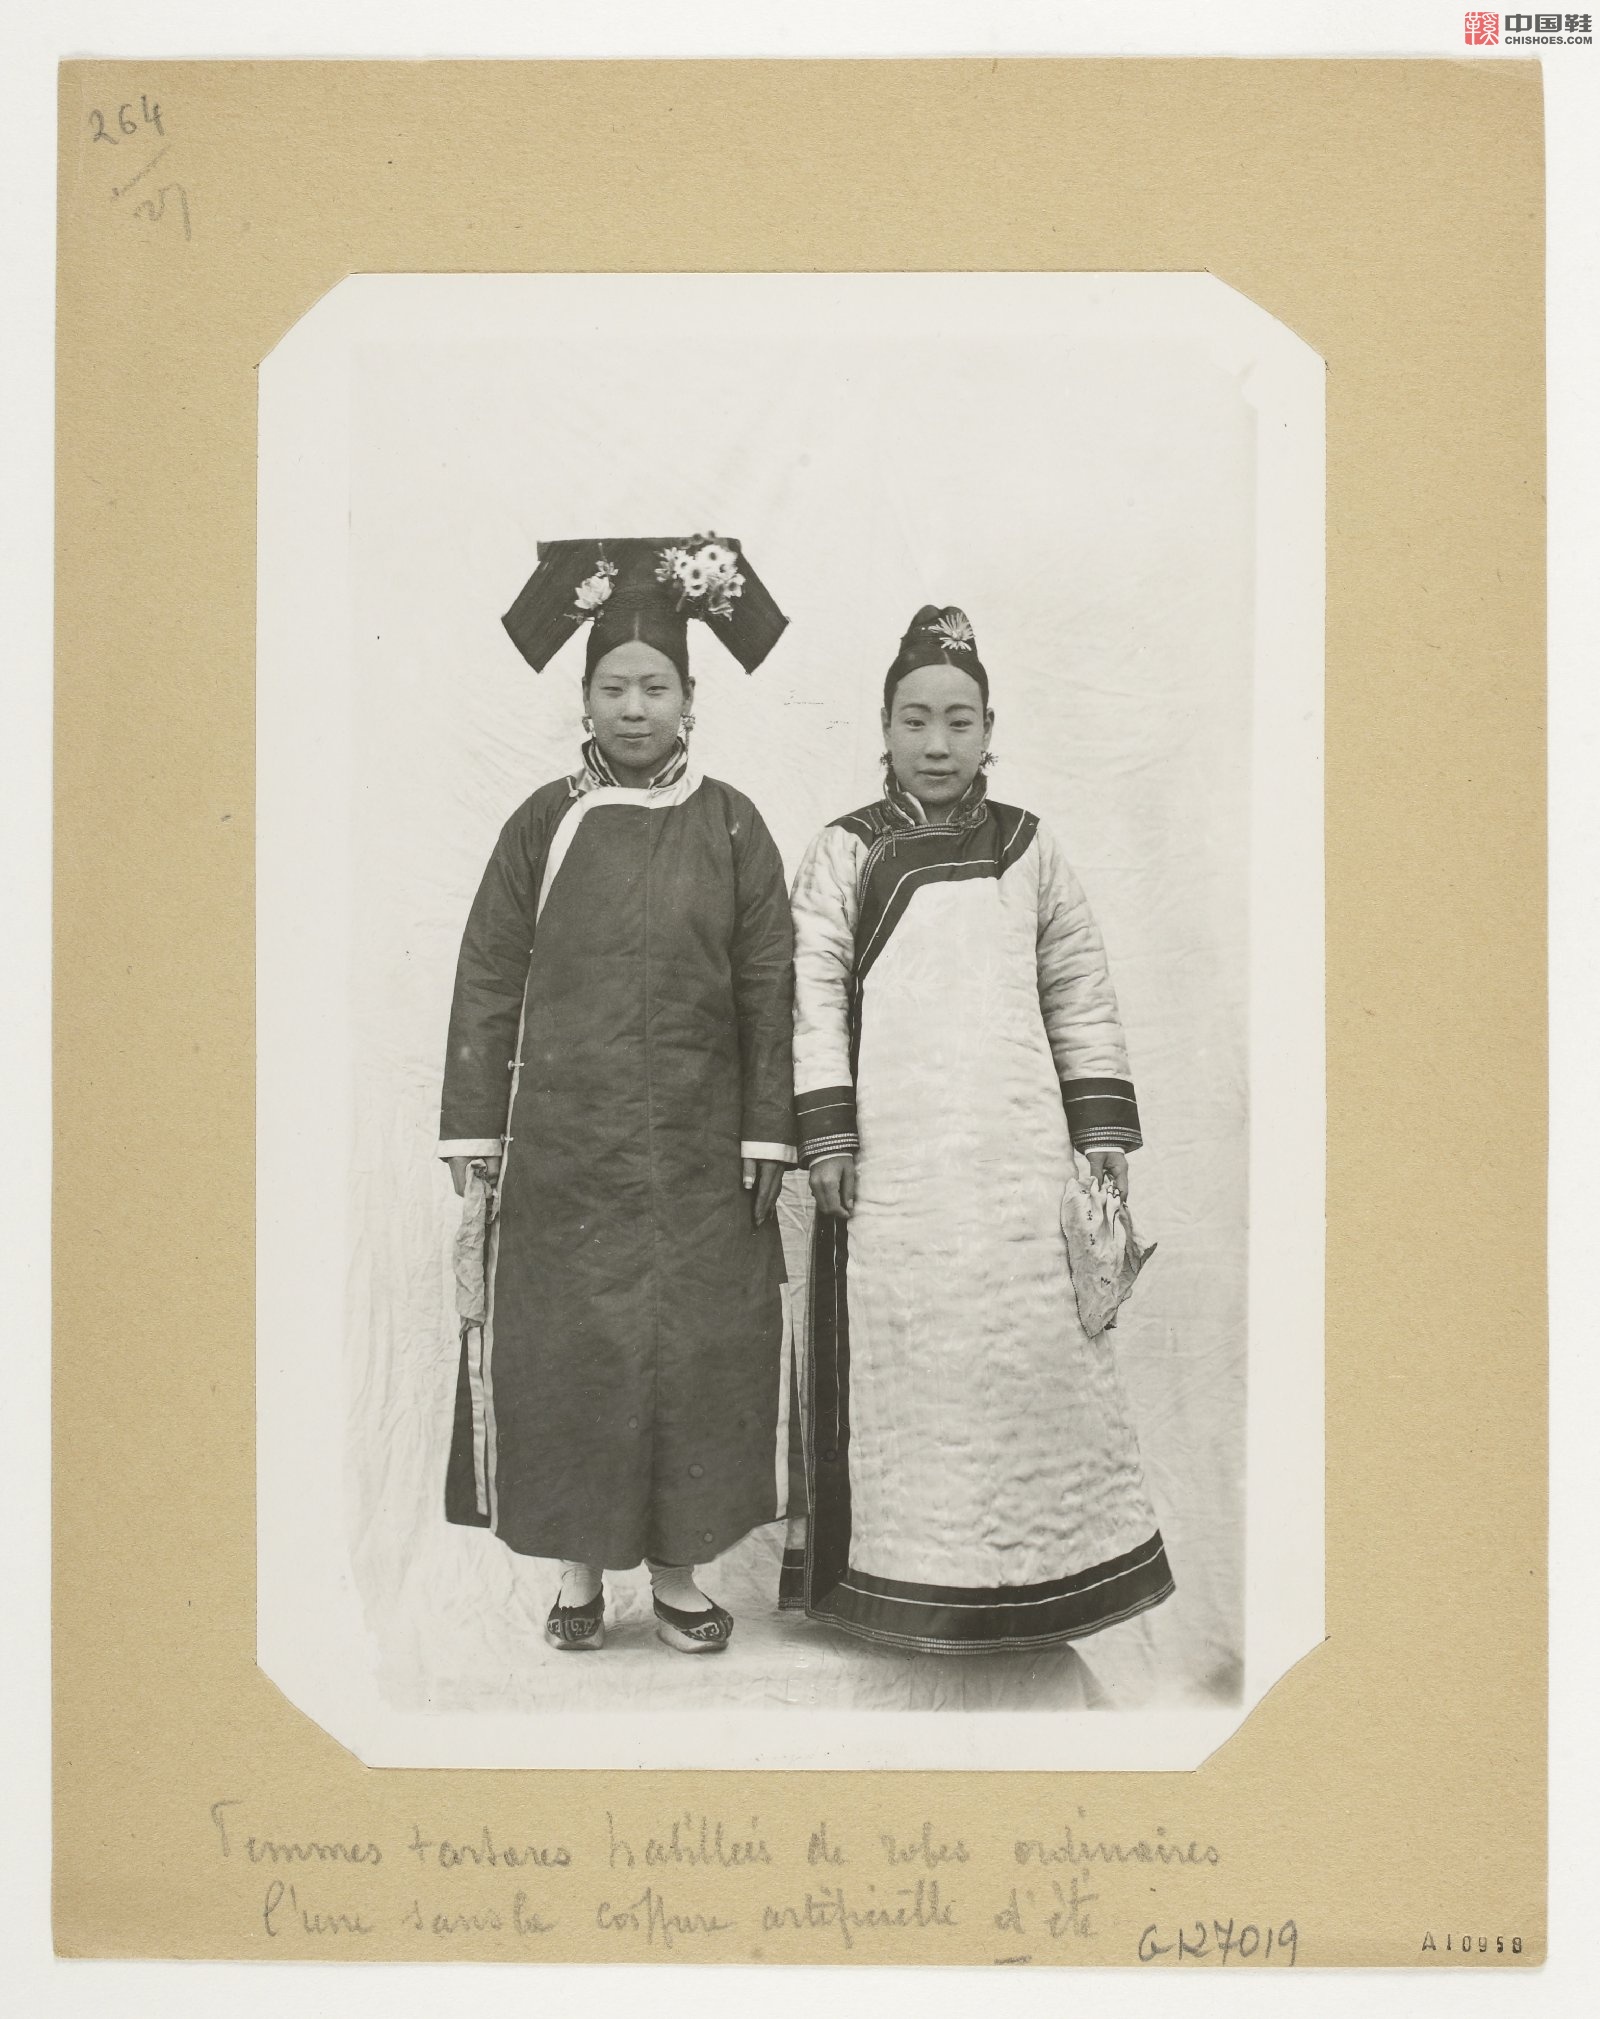 拉里贝的中国影像记录.415幅.By Firmin Laribe.1900-1910年_Page_051.jpg